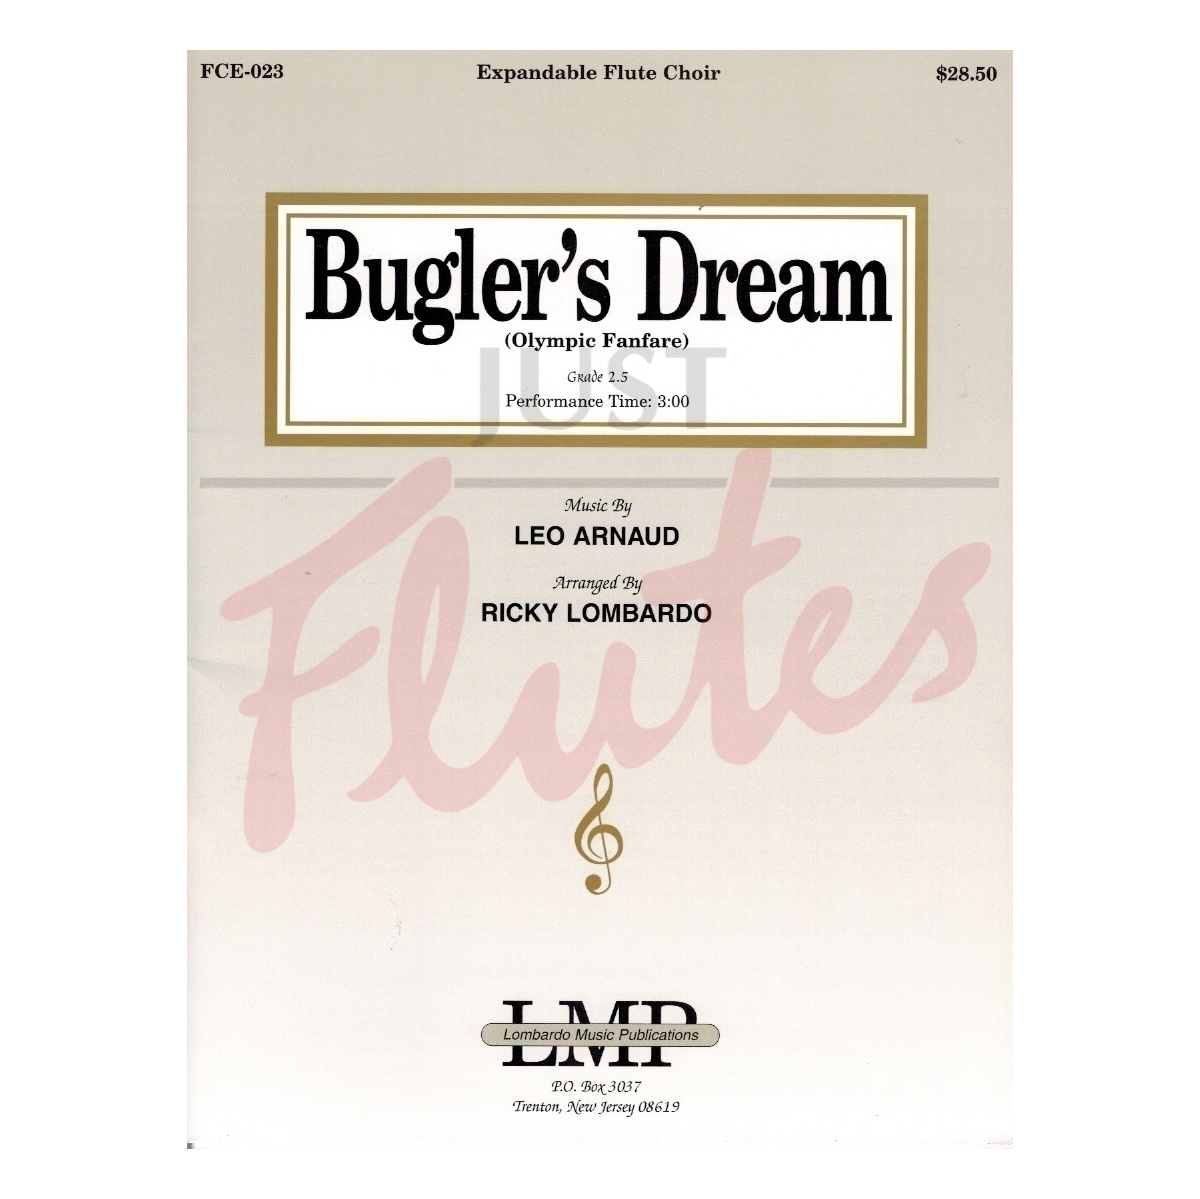 Bugler's Dream (The Olympic Fanfare) for Flute Choir